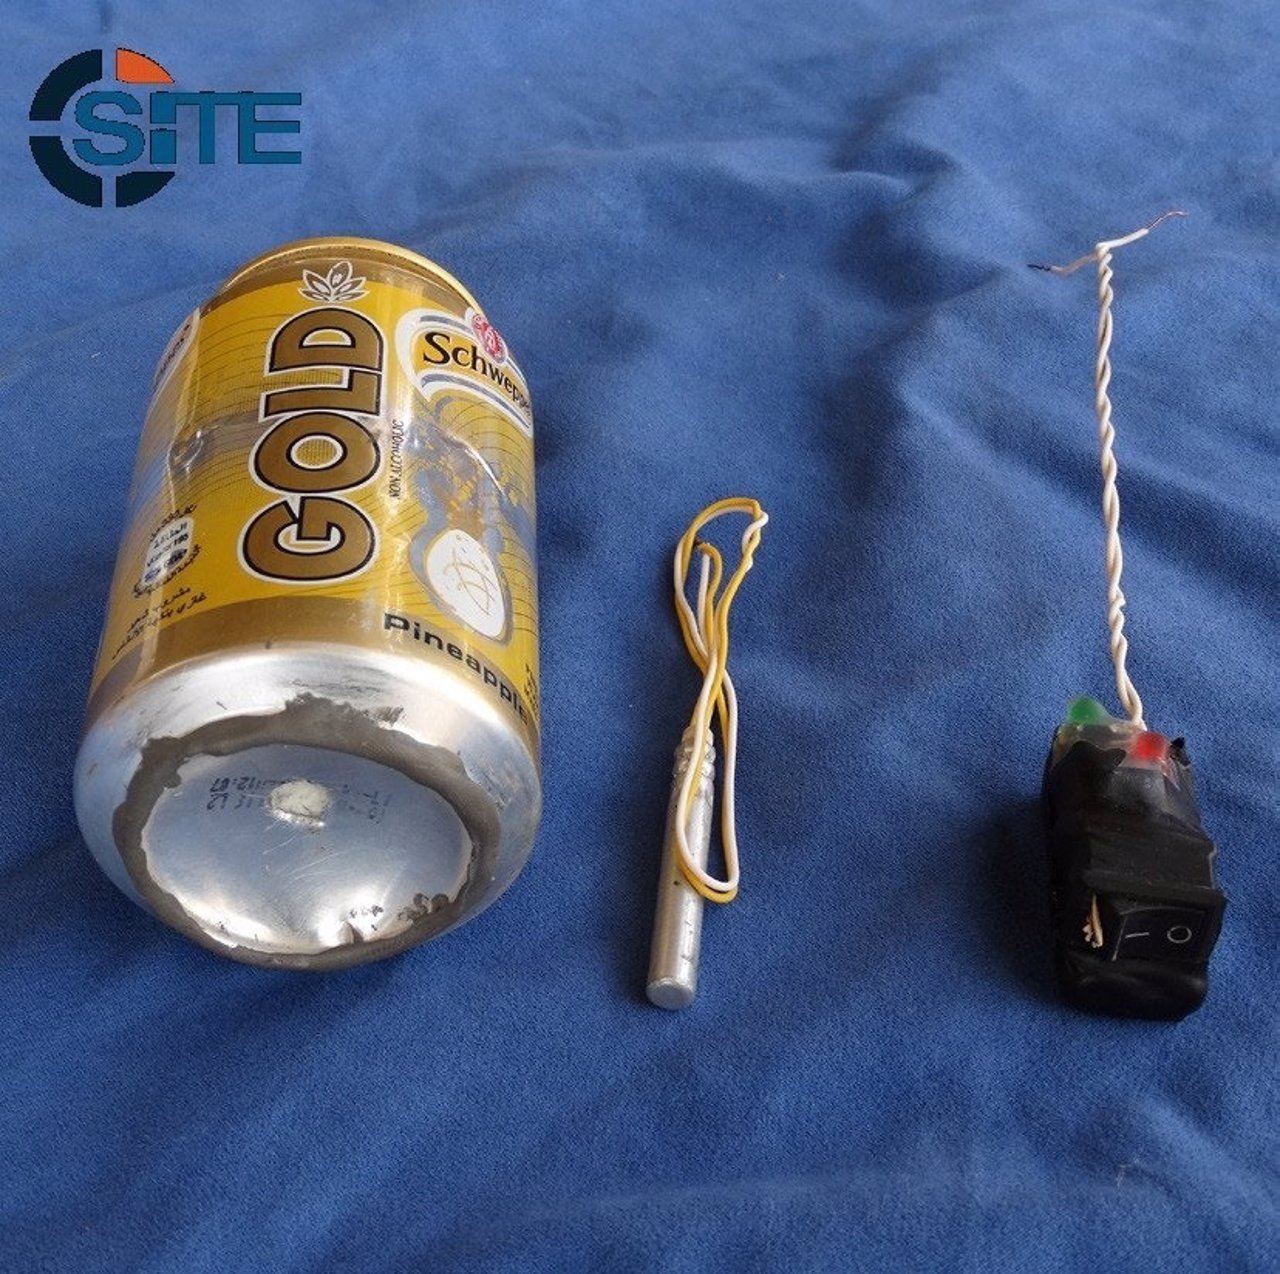 Supuesto artefacto utilizado para derribar un avión ruso en el Sinaí